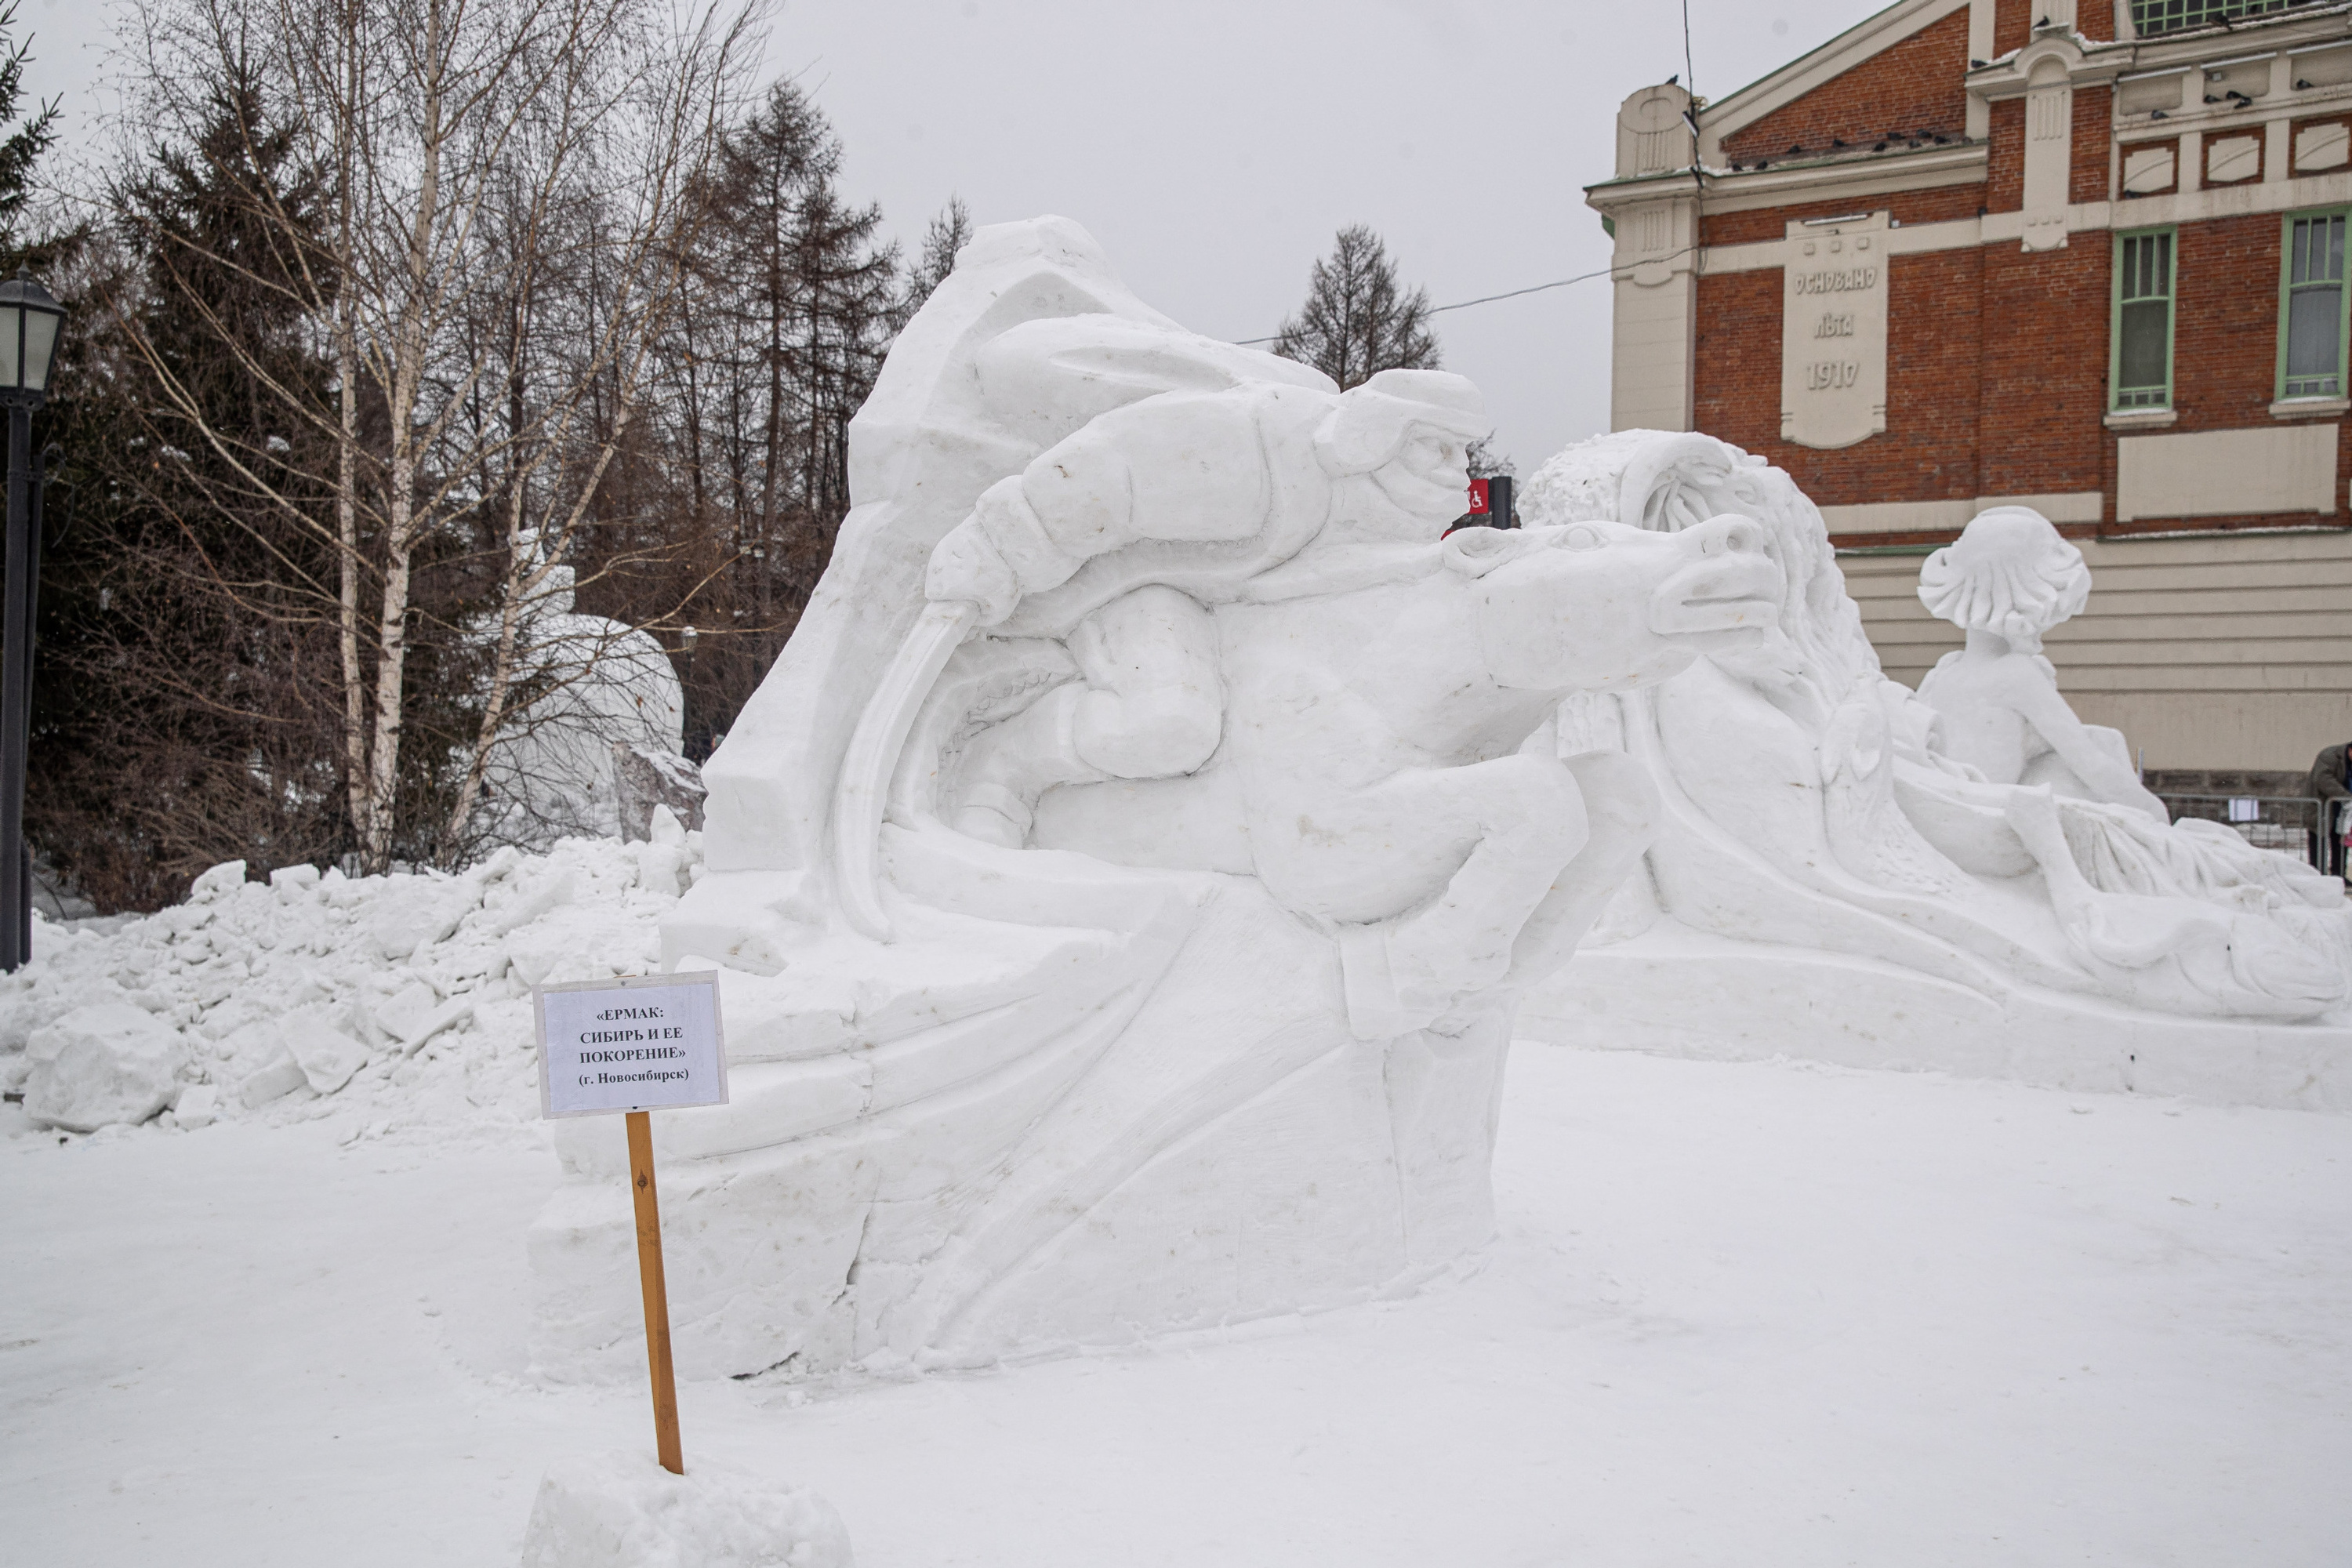 Скульптура «Ермак: Сибирь и ее покорение» создана новосибирской командой